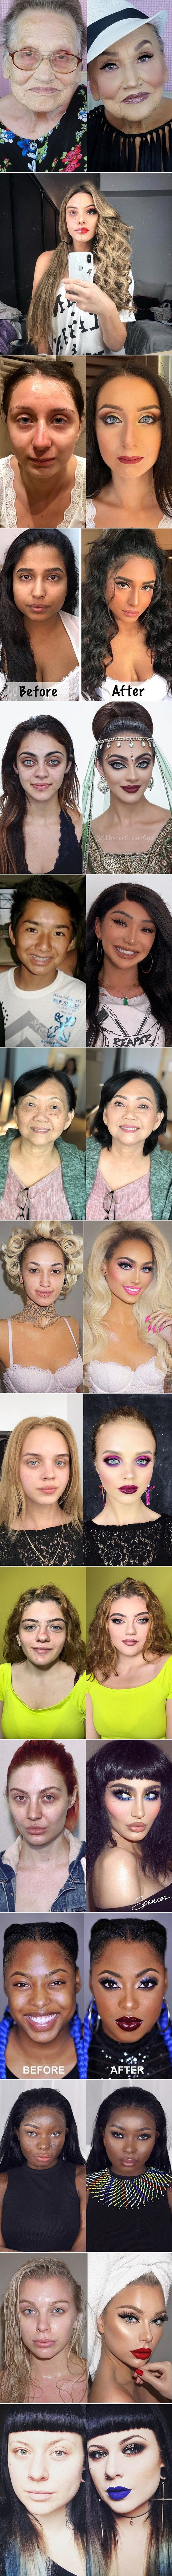 15 nevjerojatnih slika ljudi koji su nakon šminkanja dobili sasvim novo lice